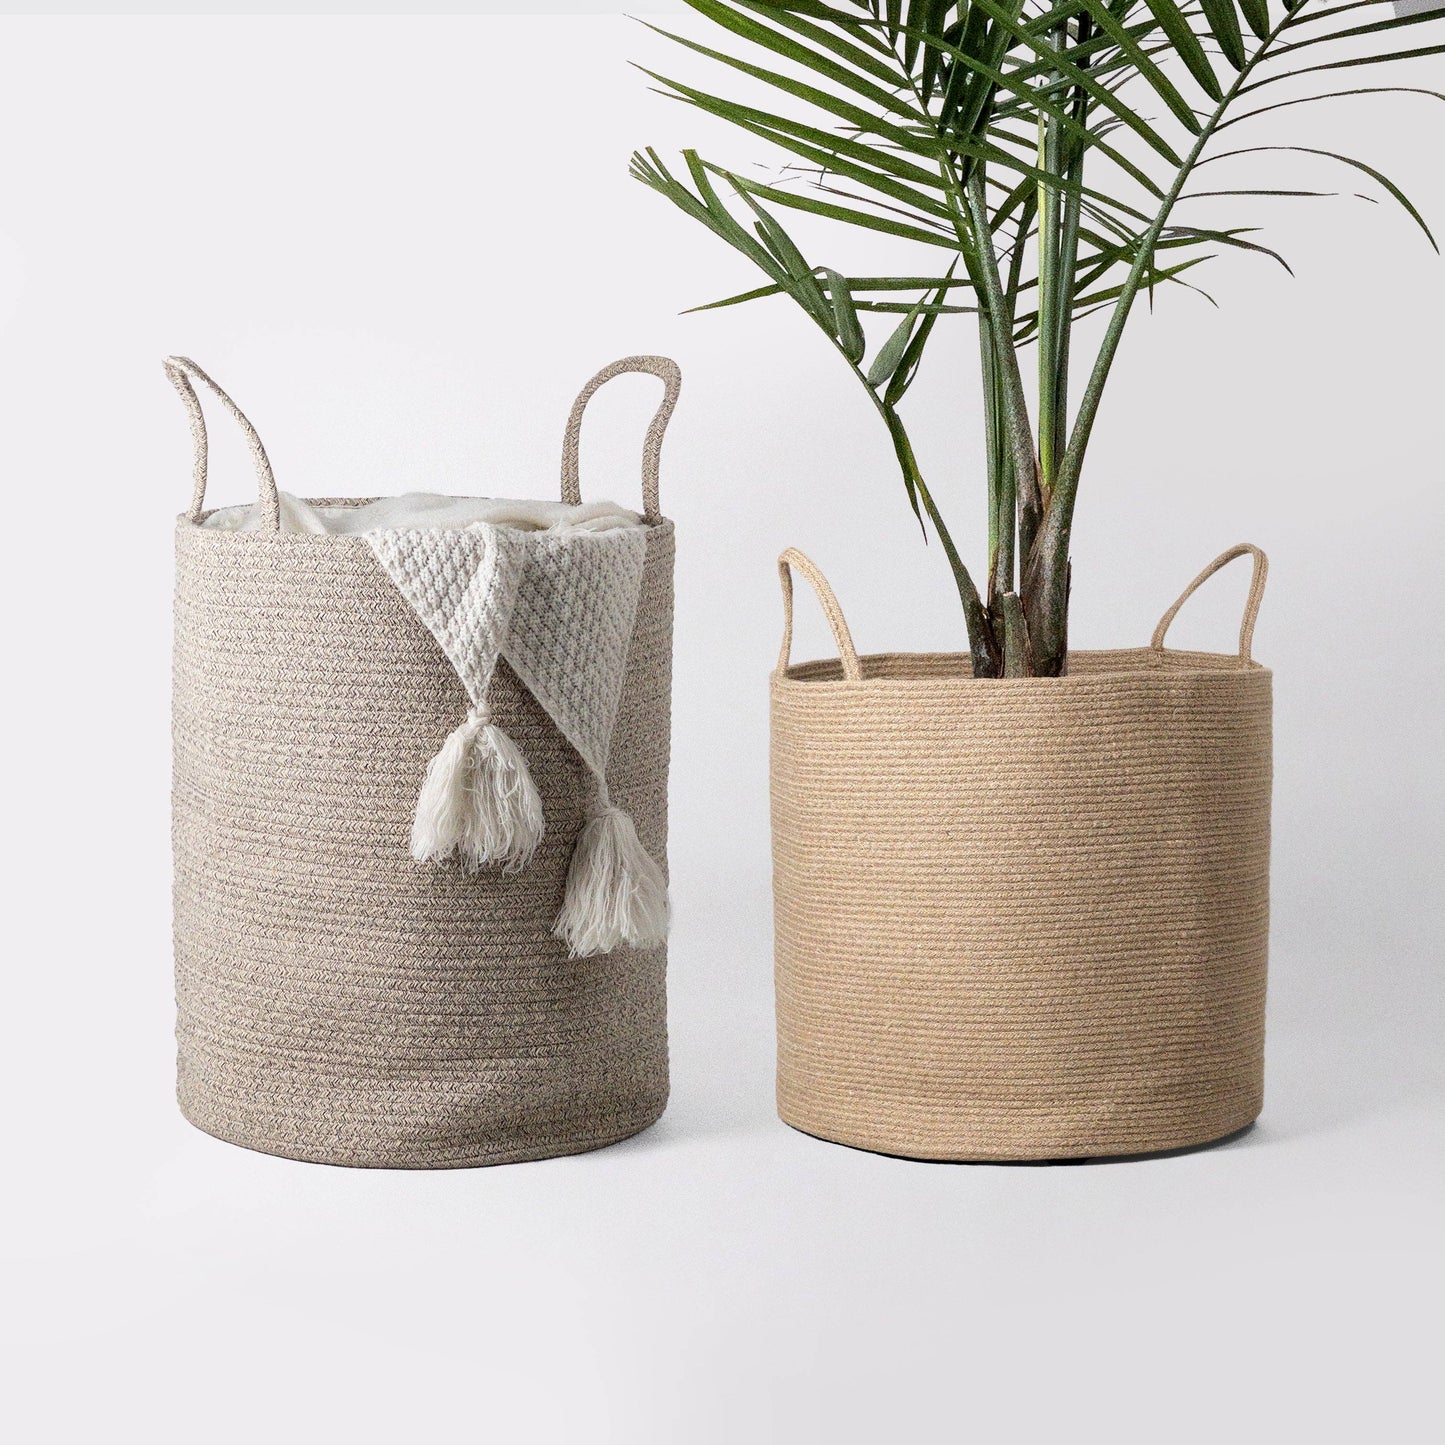 Hand-woven Jute Planter Baskets